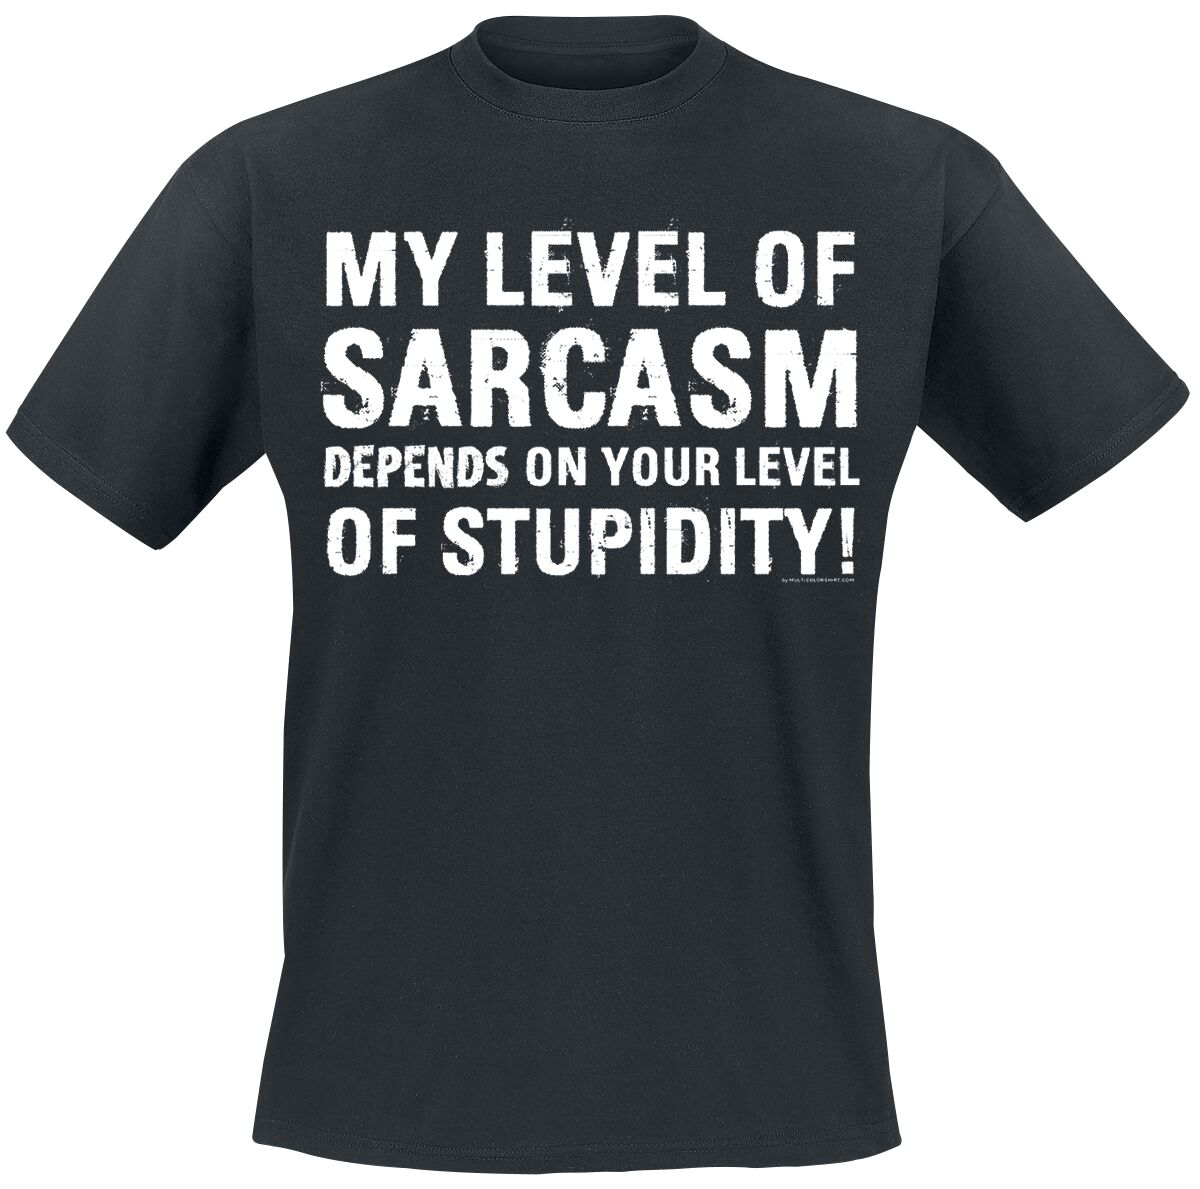 Sprüche T-Shirt - My Level Of Sarcasm Depends On Your Level Of Stupidity! - M bis 4XL - für Männer - Größe 4XL - schwarz